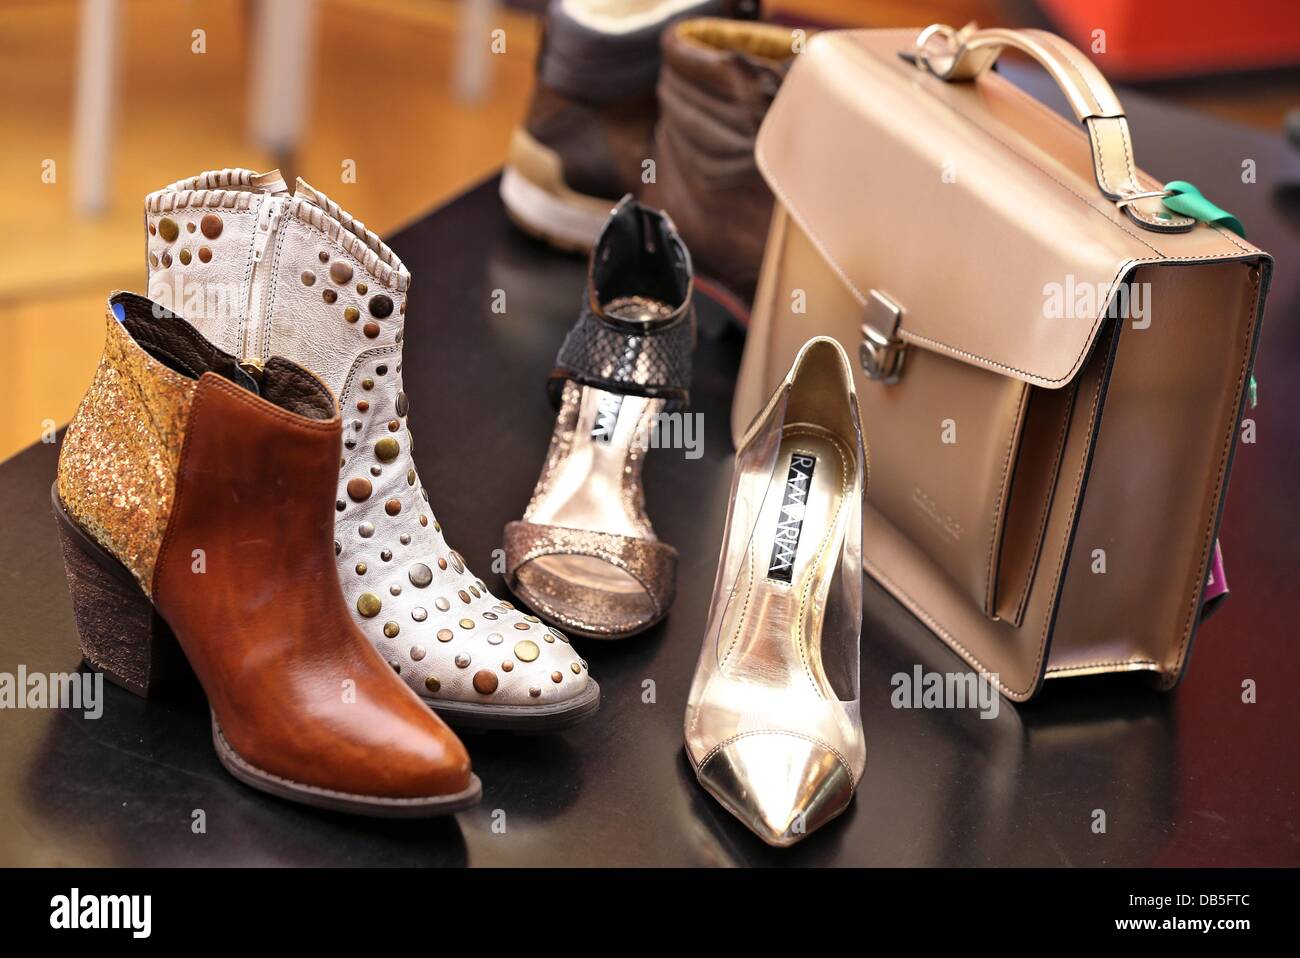 Leipzig, Alemania. 24 de julio de 2013. Zapatos de mujer elegante bolsa a  juego son presentados en Leipzig, Alemania, el 24 de julio de 2013. El  Instituto alemán de zapatos (DSI) presenta